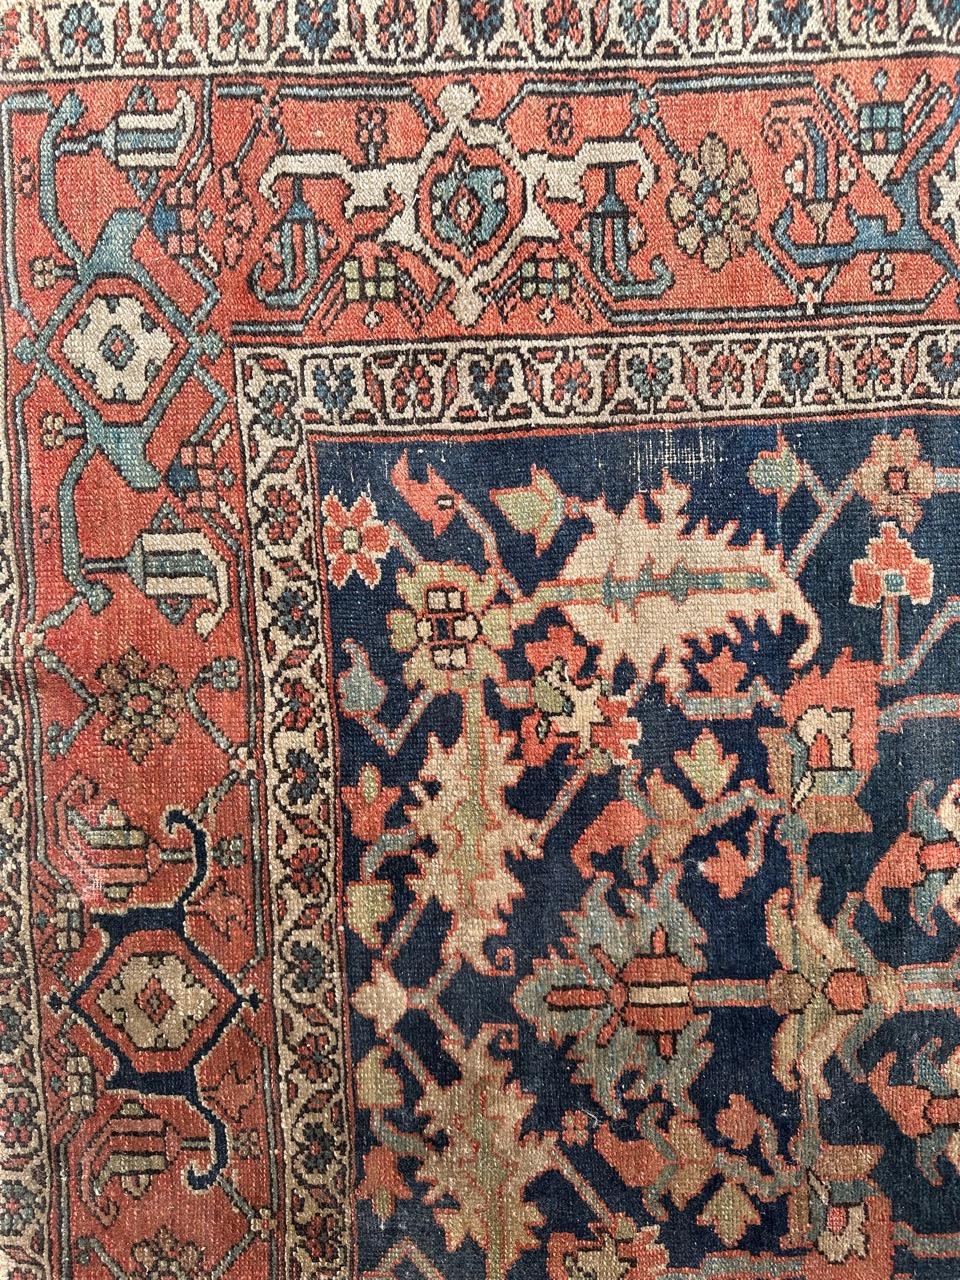 Wunderschöner antiker Heriz-Teppich mit schönem Design und schönen Naturfarben, etwas lose an den Rändern, aber in gutem Zustand.
Vollständig handgeknüpft mit Wolle auf Baumwollbasis 

✨✨✨
